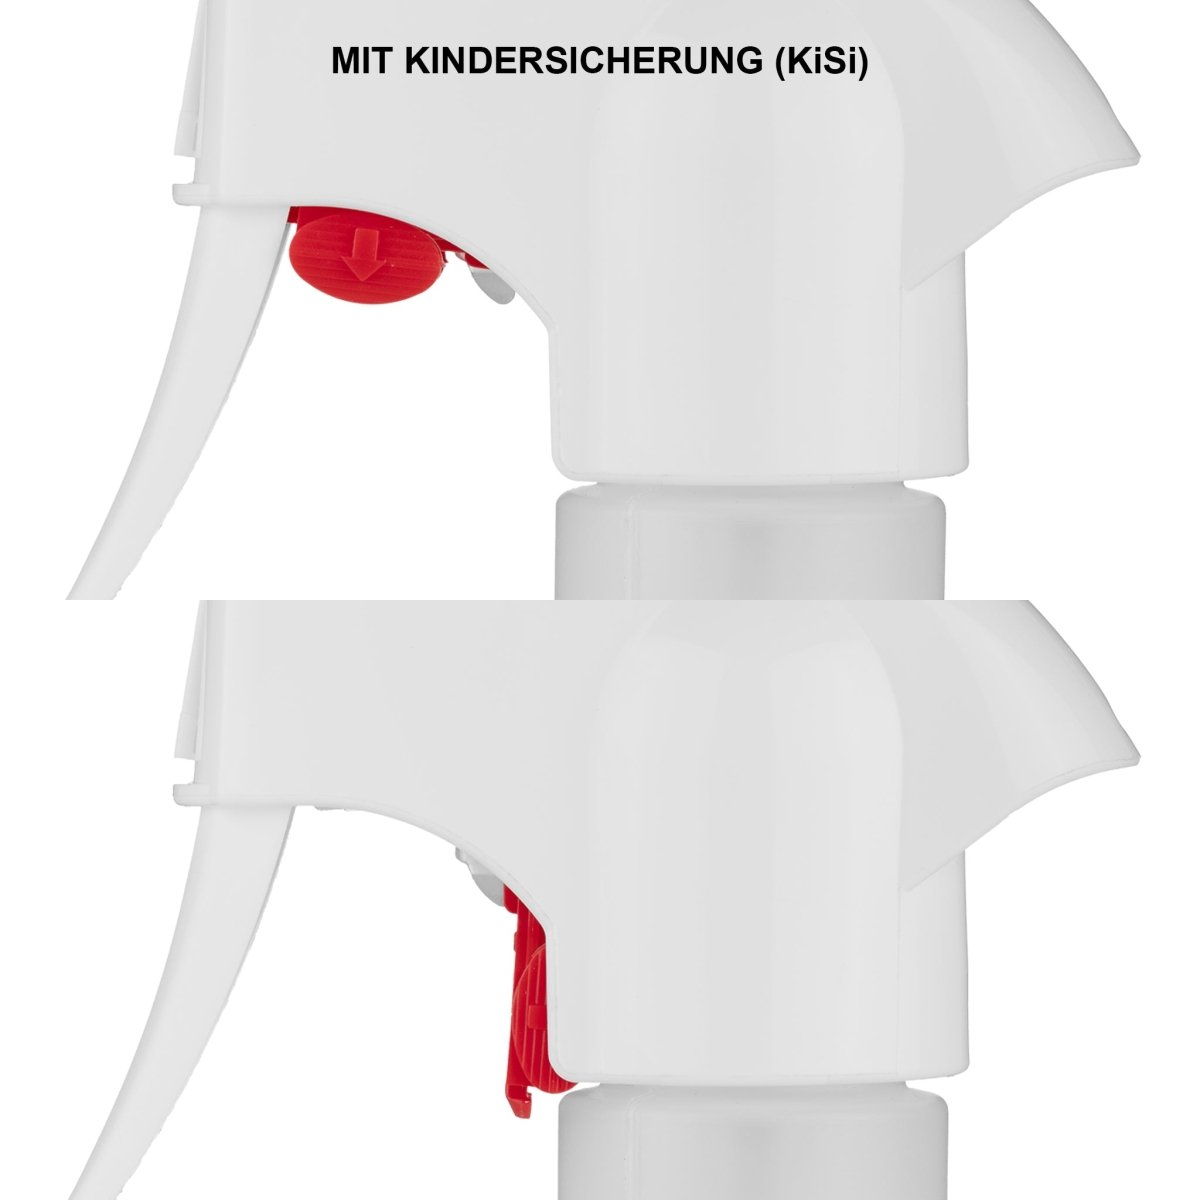 Kunststoff-Systemflasche rund 500 ml mit Pump-Sprühkopf mit Kindersicherung (KiSi) - CLEANOFANT